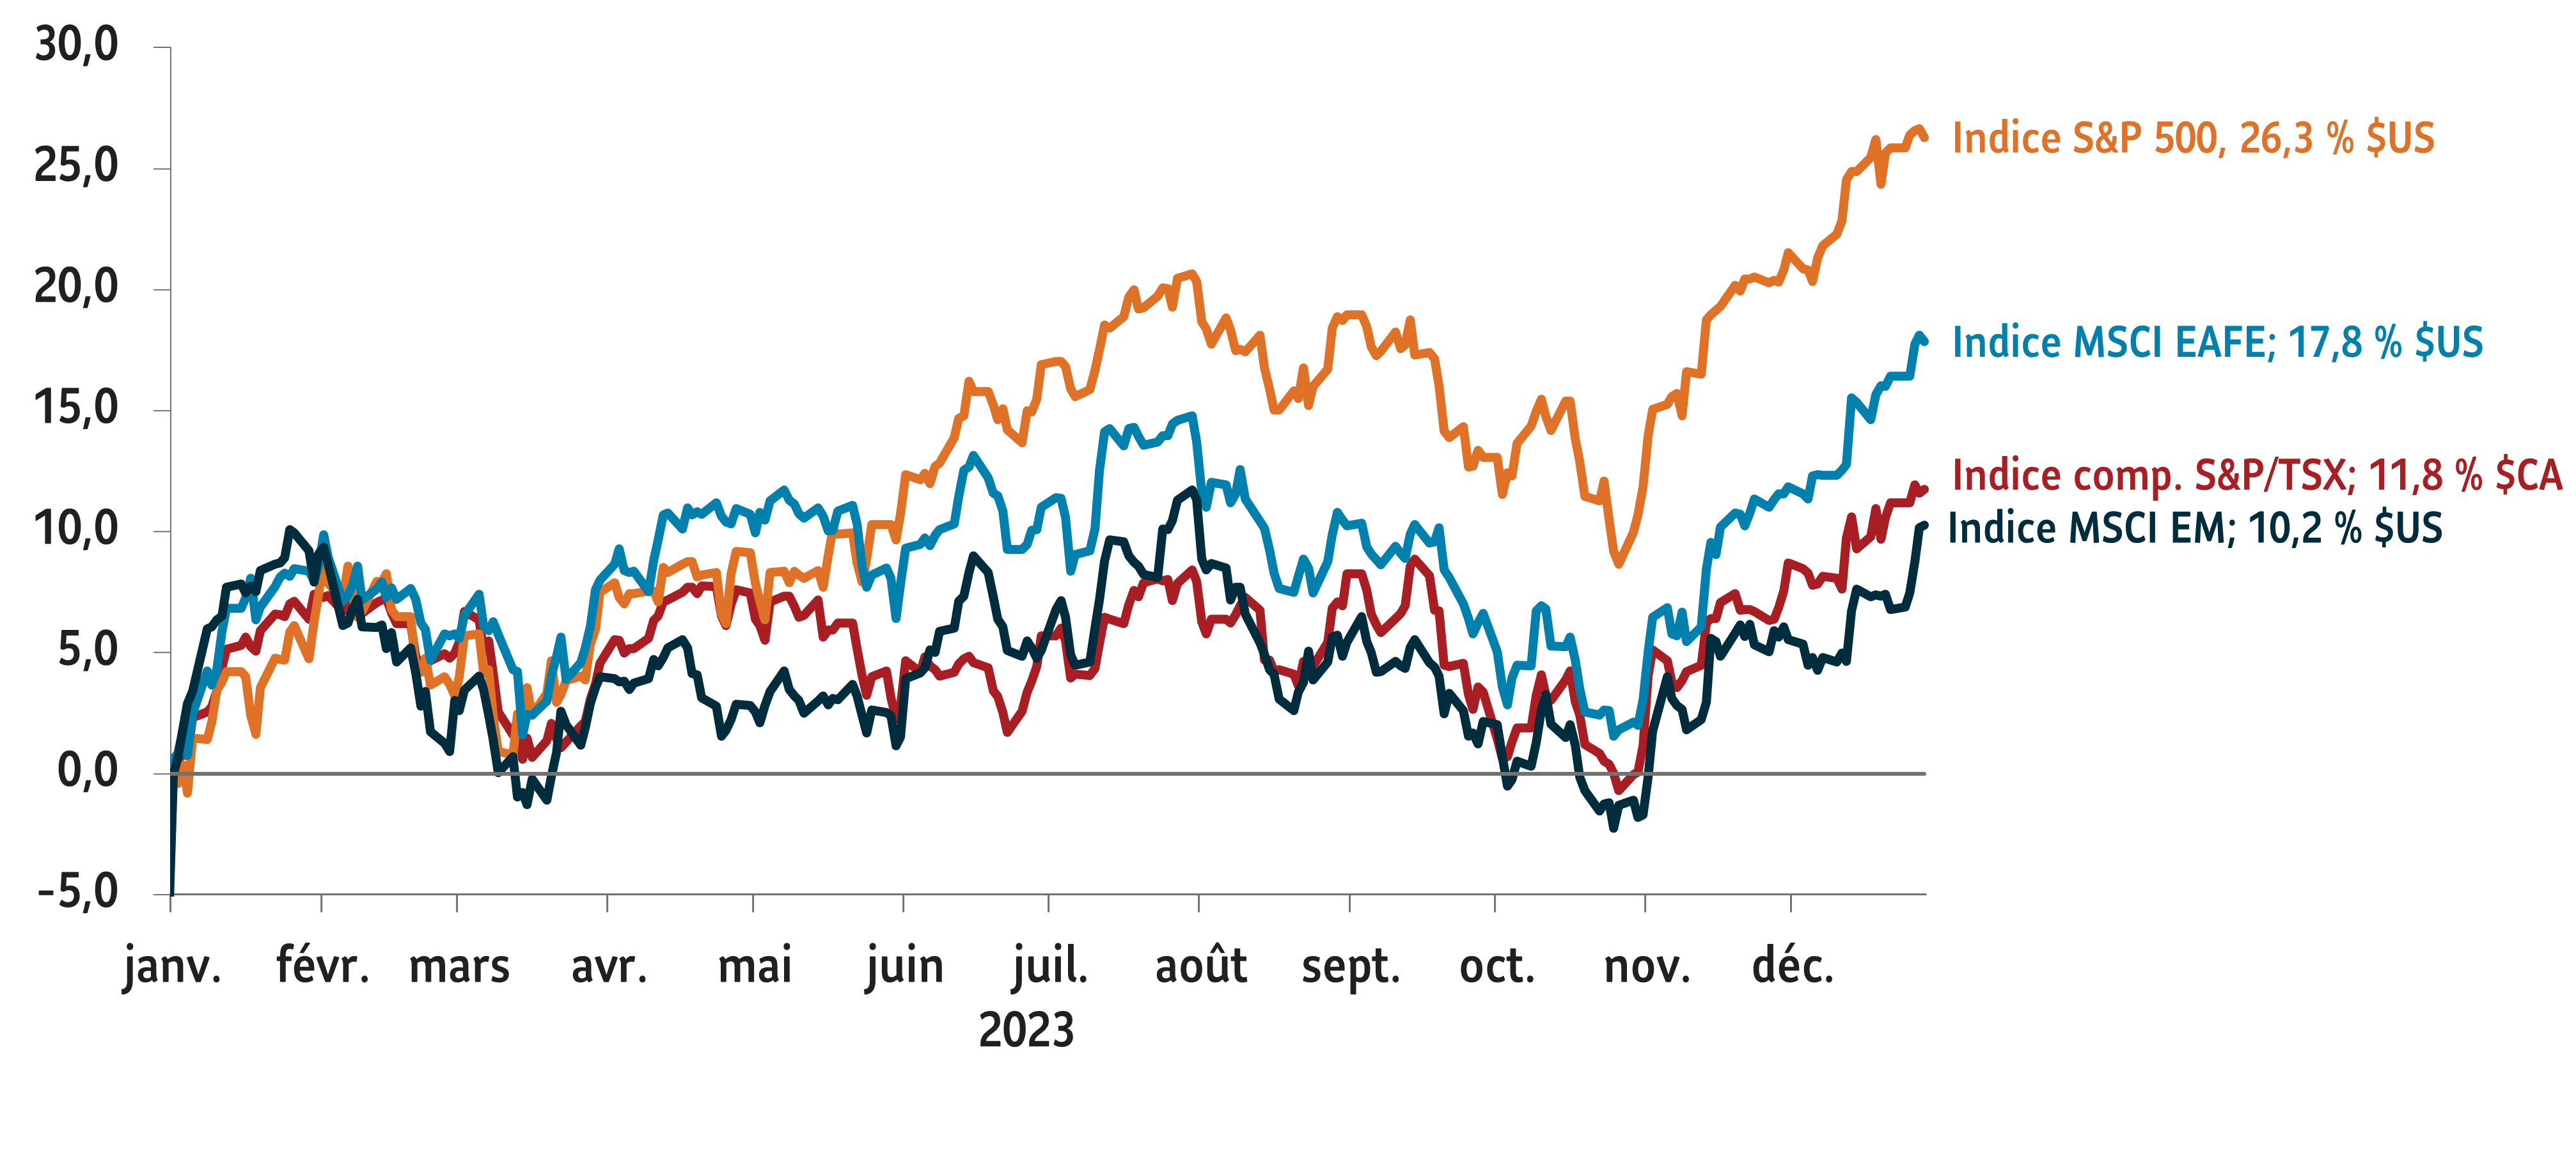 Le graphique linéaire fait état du rendement des indices de référence d’actions américaines, canadiennes, internationales et des marchés émergents au T4 2023. Tous les indices ont enregistré une croissance à 2 chiffres au T4 2023.